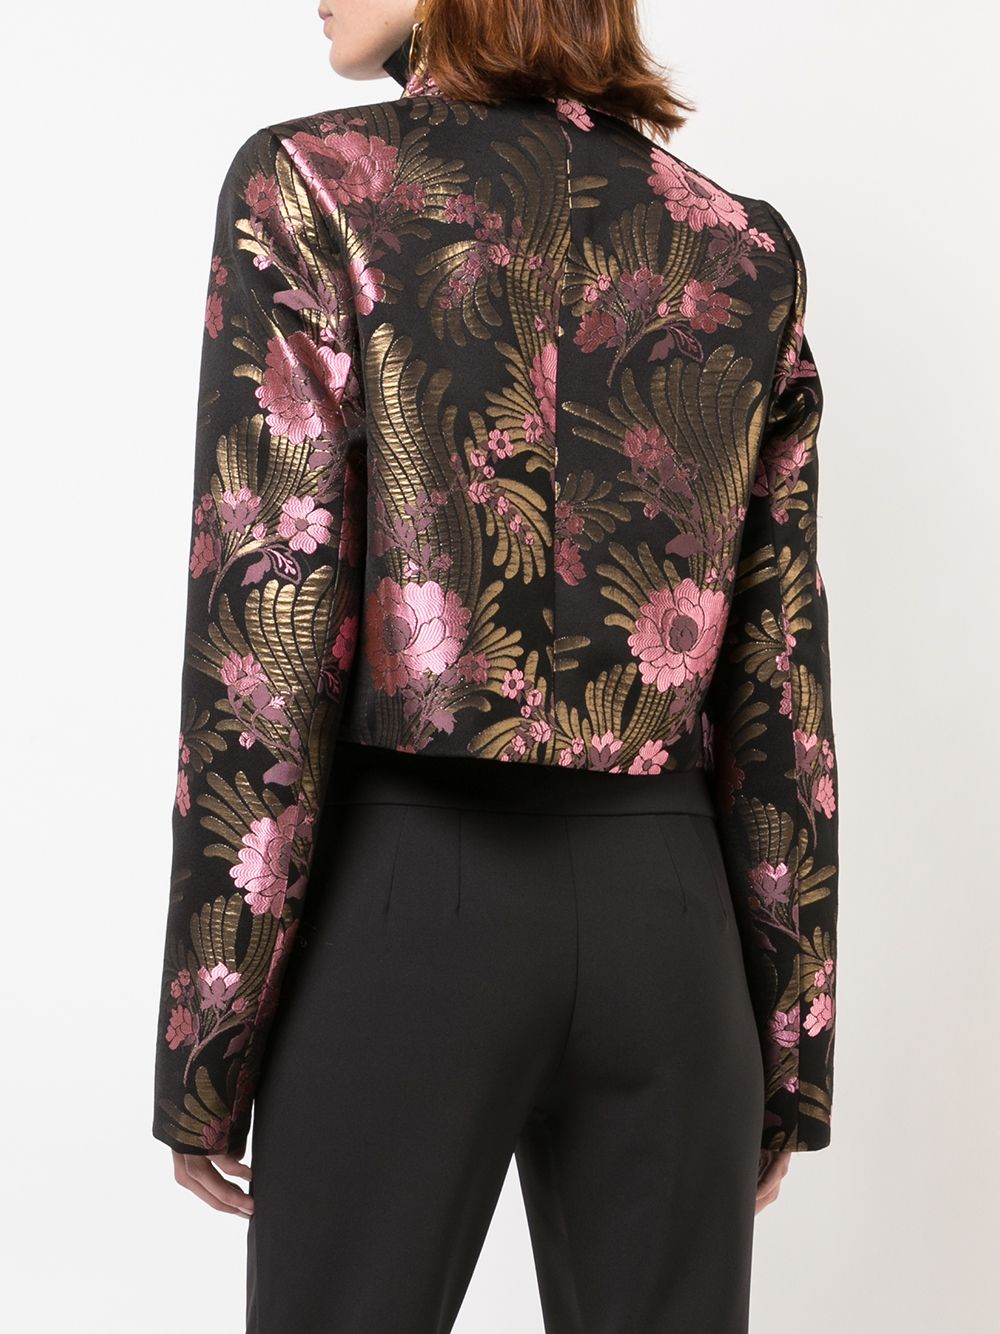 фото Josie Natori пиджак с жаккардовым цветочным узором